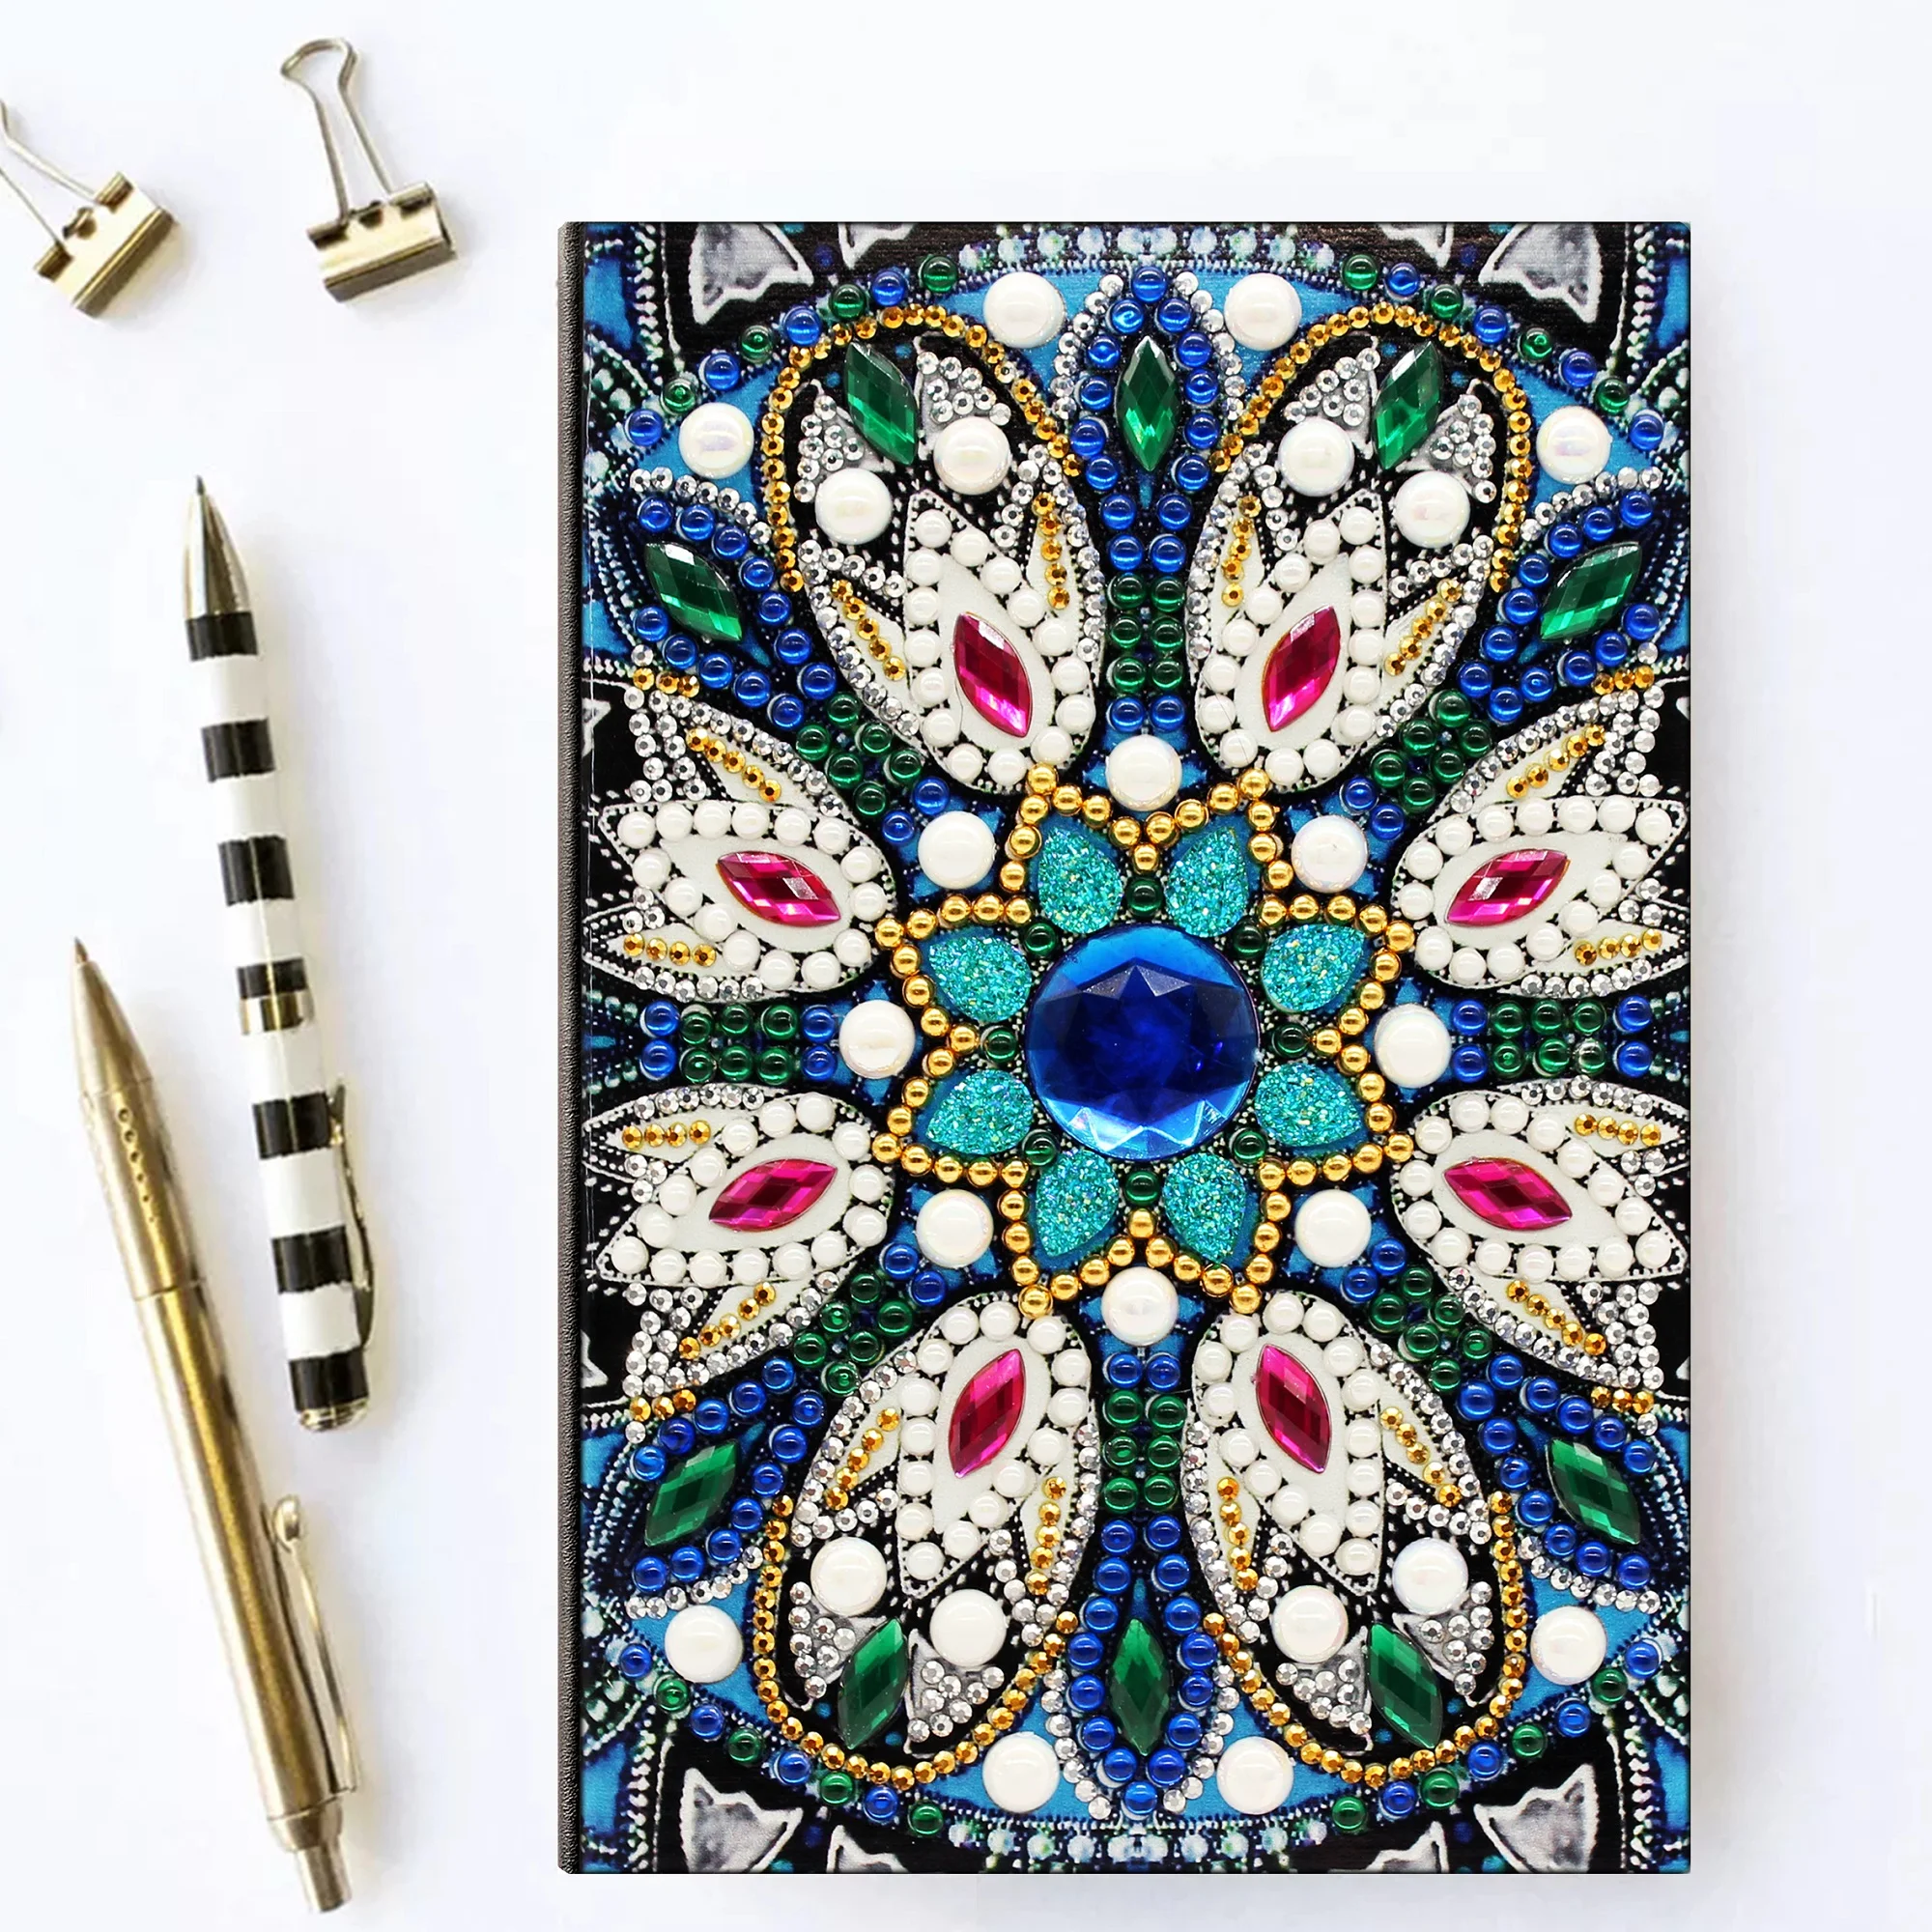 Shirliben Diy Художественный Алмазный альбом для рисования дневник полная круглая вышивка мозаикой из стразов A5 64 страницы сова с изображением павлиньей мандалы бабочки